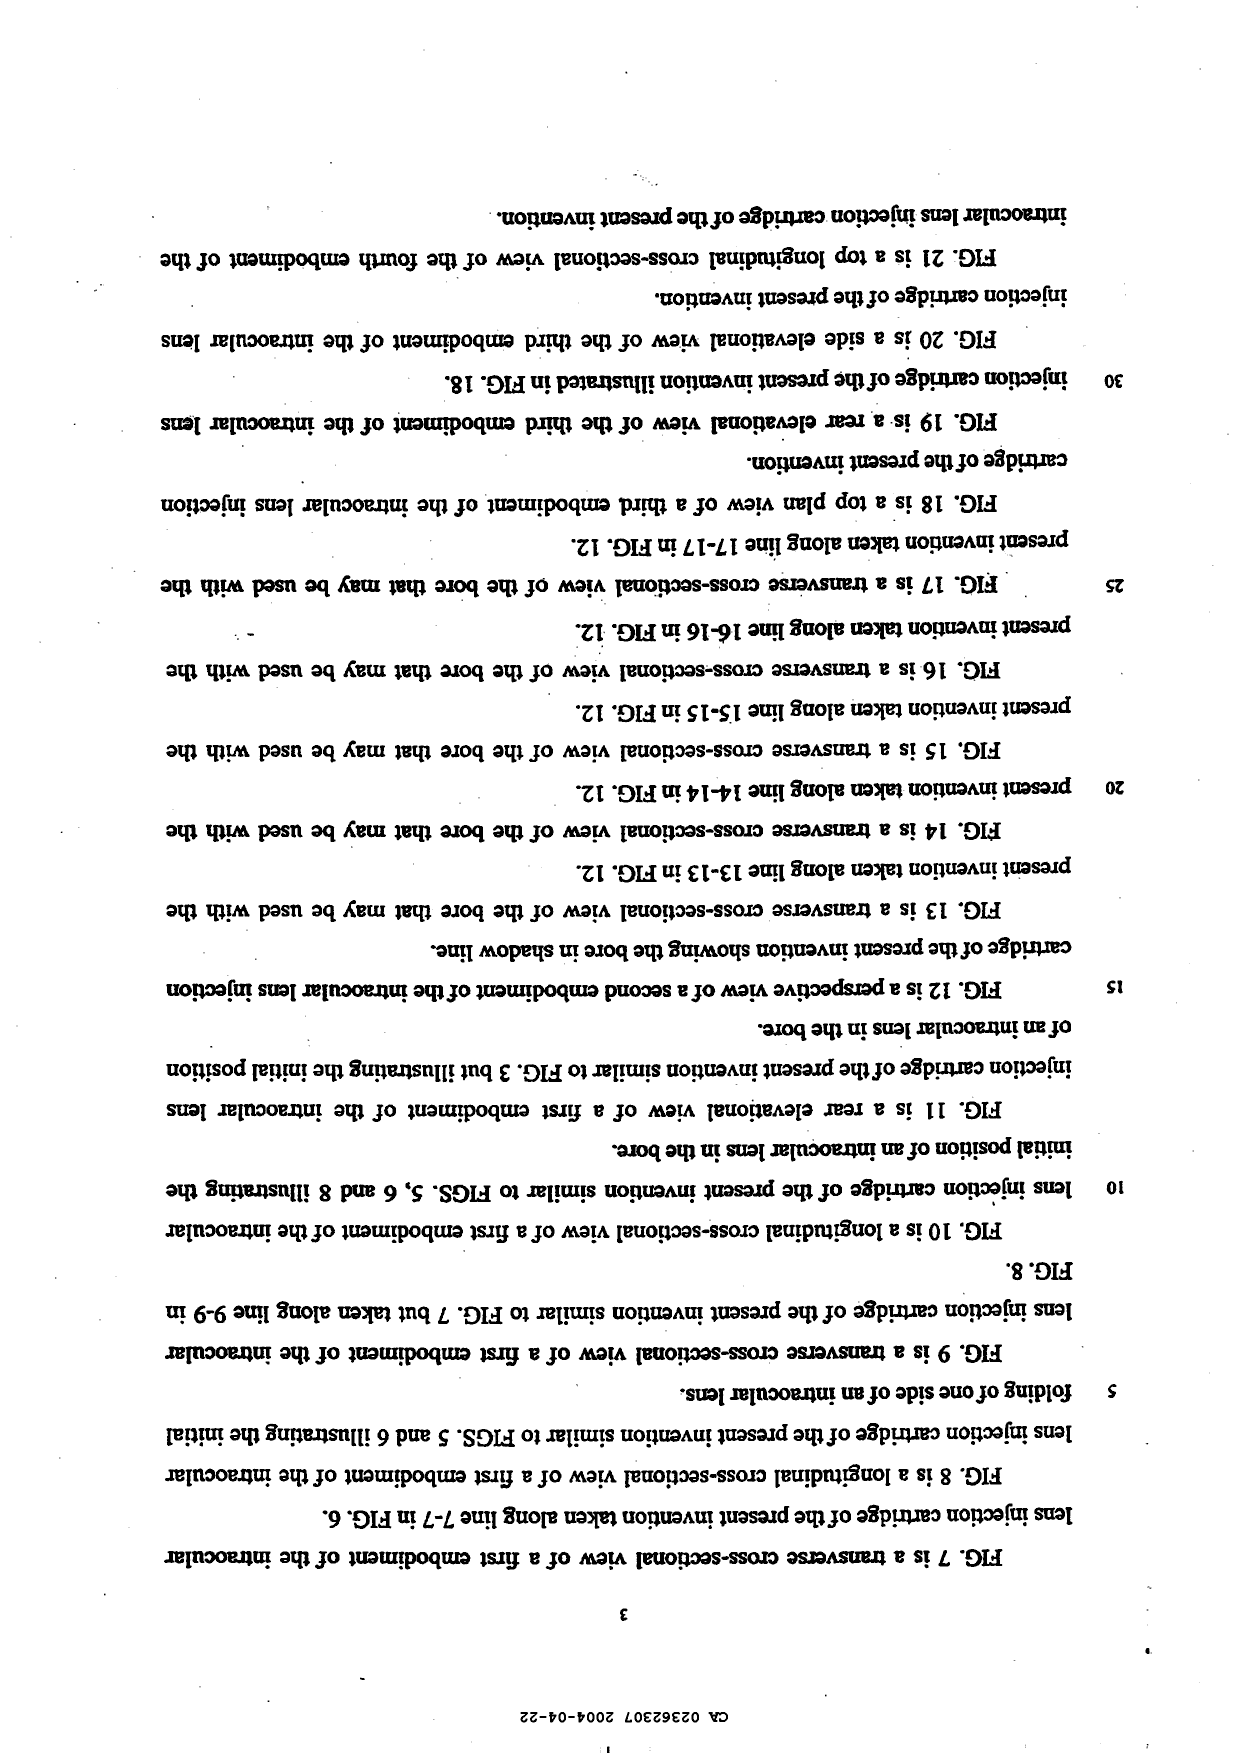 Canadian Patent Document 2362307. Description 20031222. Image 3 of 6